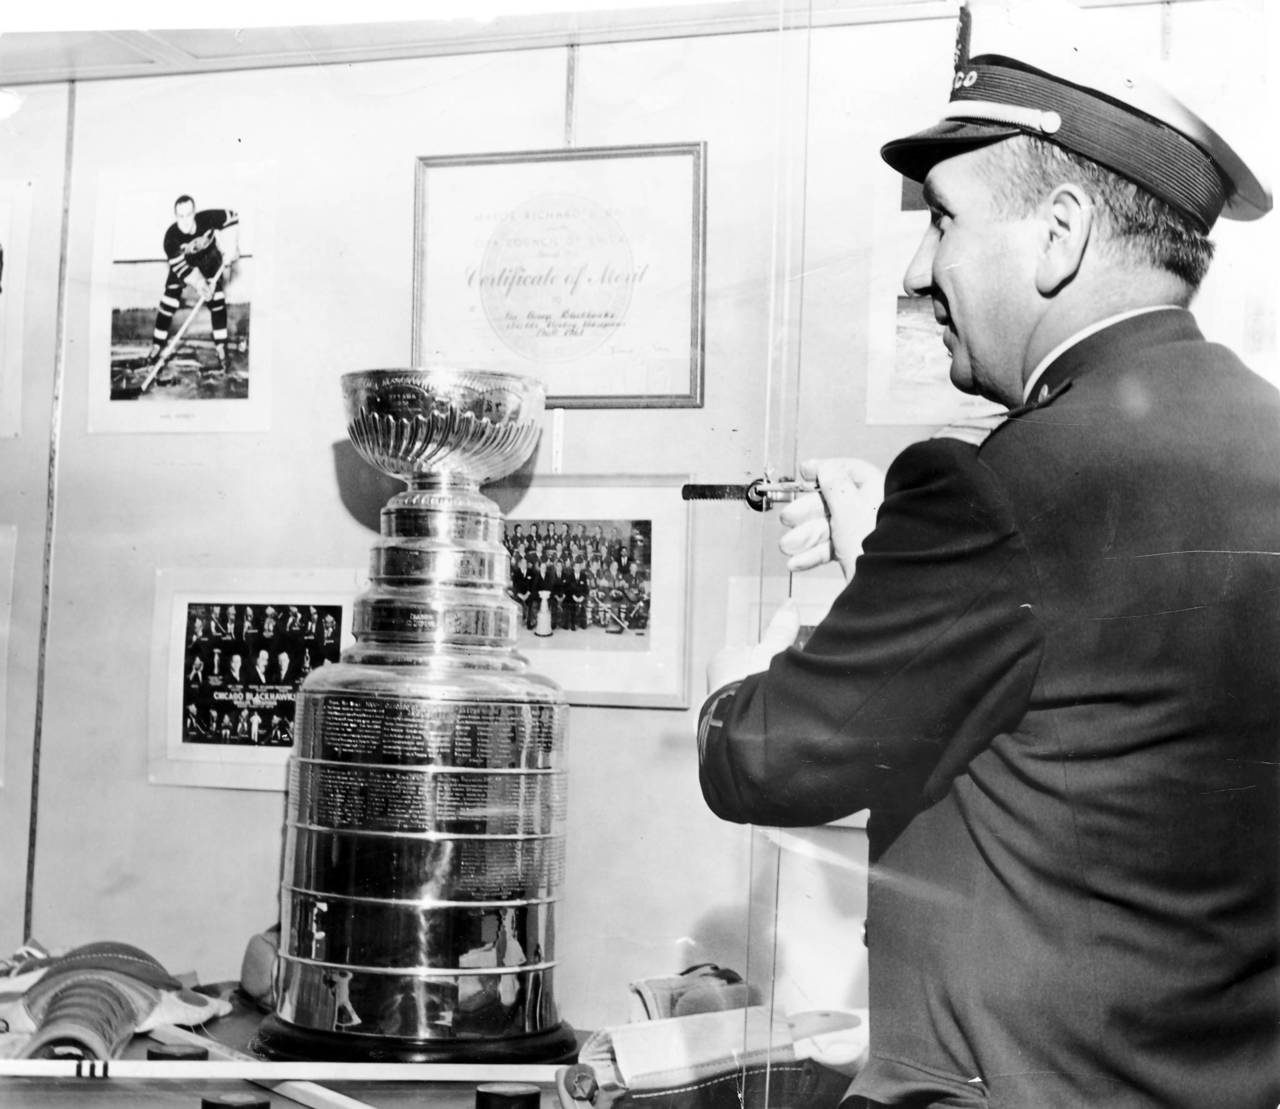 1 апреля 1962 года Энди Фрейн Ашер Лестер Модести показывает замок и кейс, где кто-то пытался украсть Кубок Стэнли 1961 года со стадиона Чикаго.